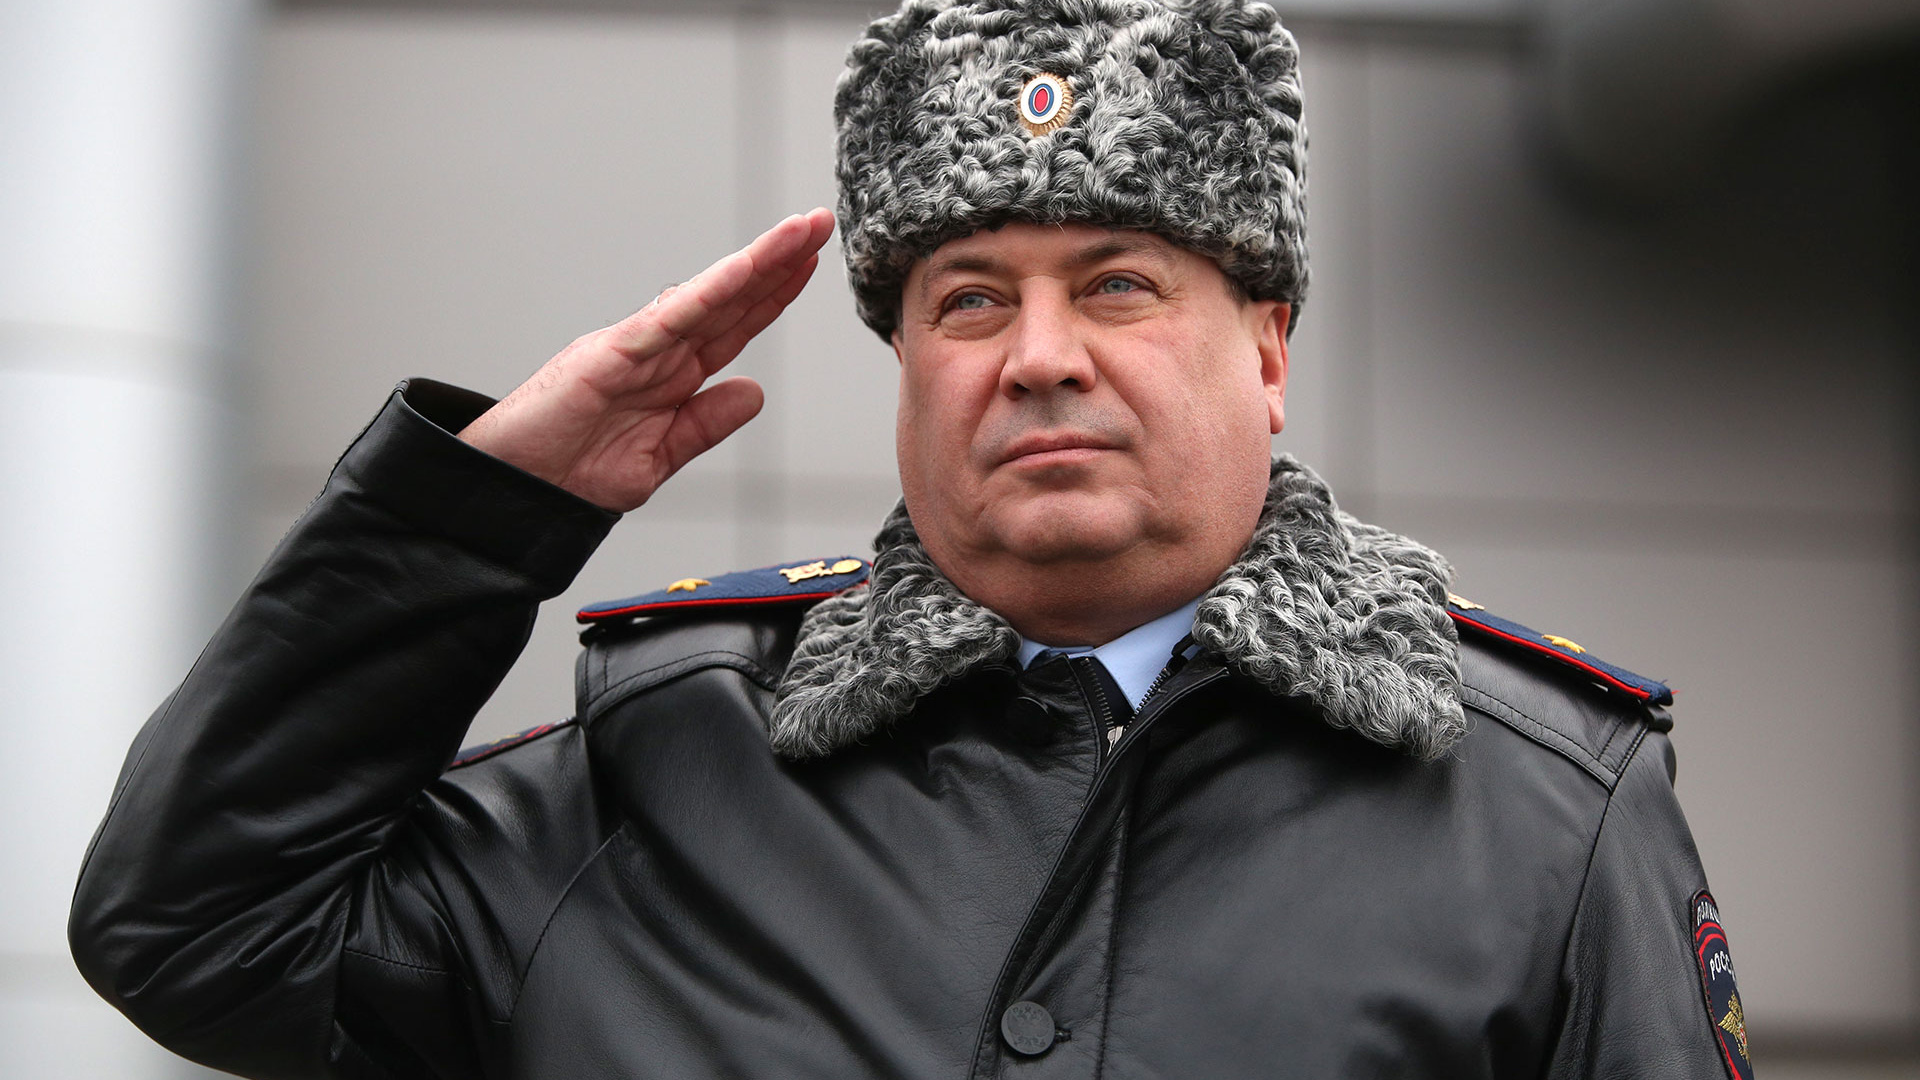 Вспоминаем скандалы и успехи ушедшего в отставку главы МВД Башкирии Романа Деева, который работал в Забайкалье